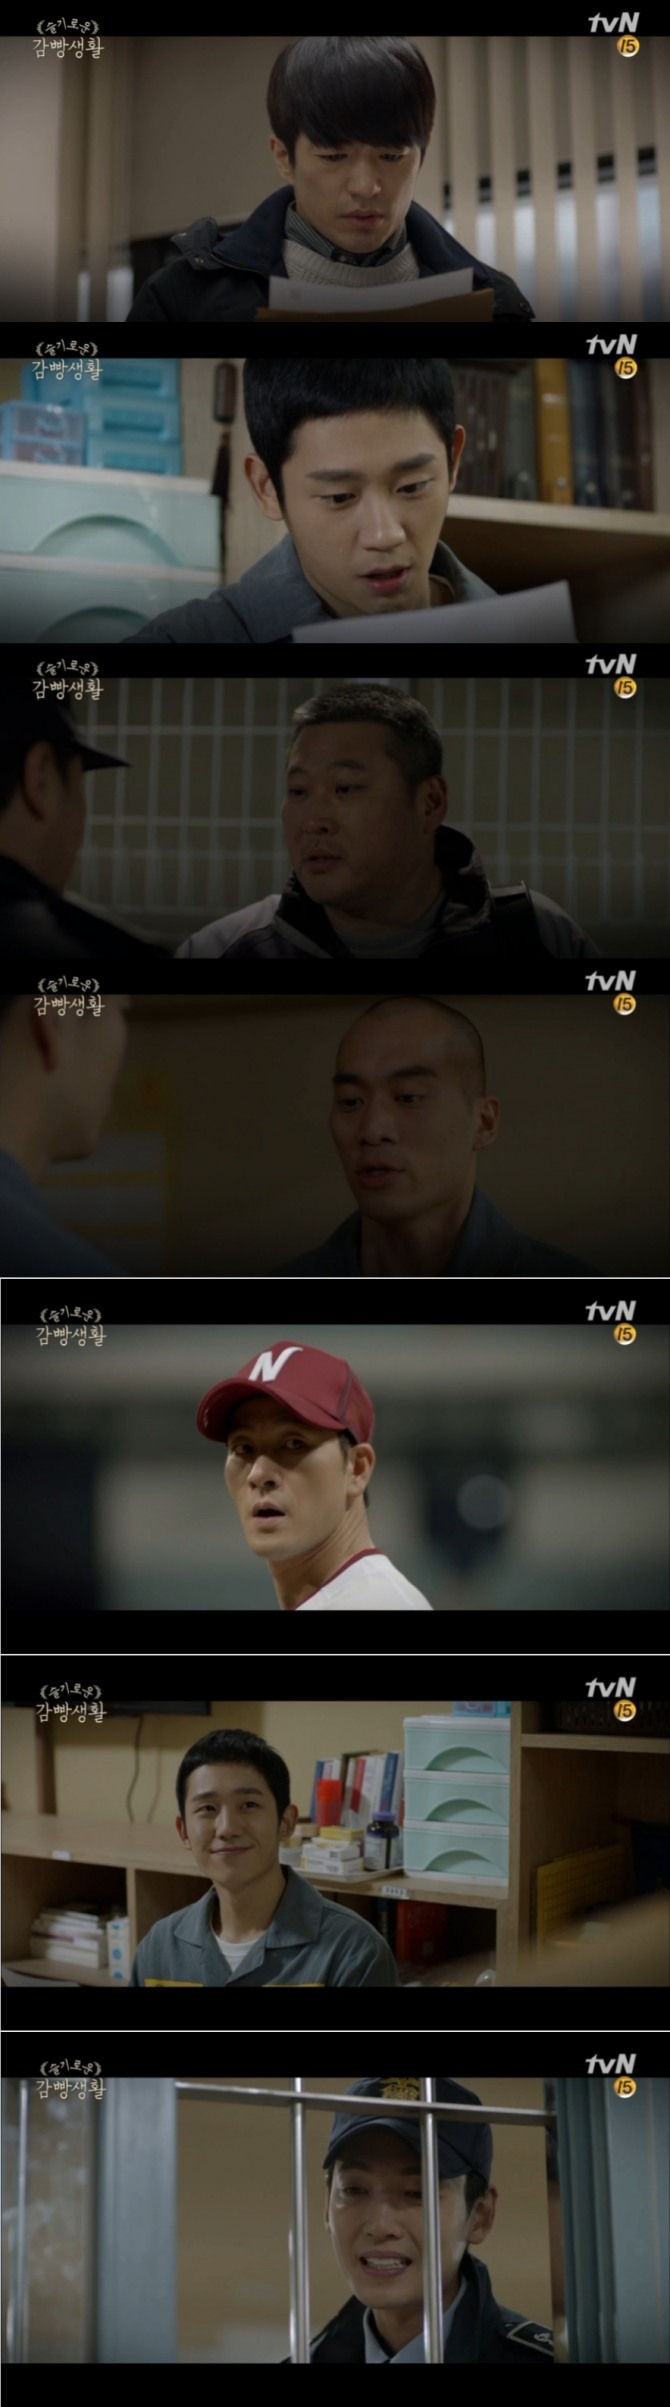 `18일 종영한 tvN 수목드라마 '슬기로운 감빵생활' 마지막회에서는 유대위(정해인)이 재심이 통과된 가운데 김제혁은 2년 만에 다시 마운드에 서는 것으로 해피엔딩했다. 사진=tvN 방송 캡처